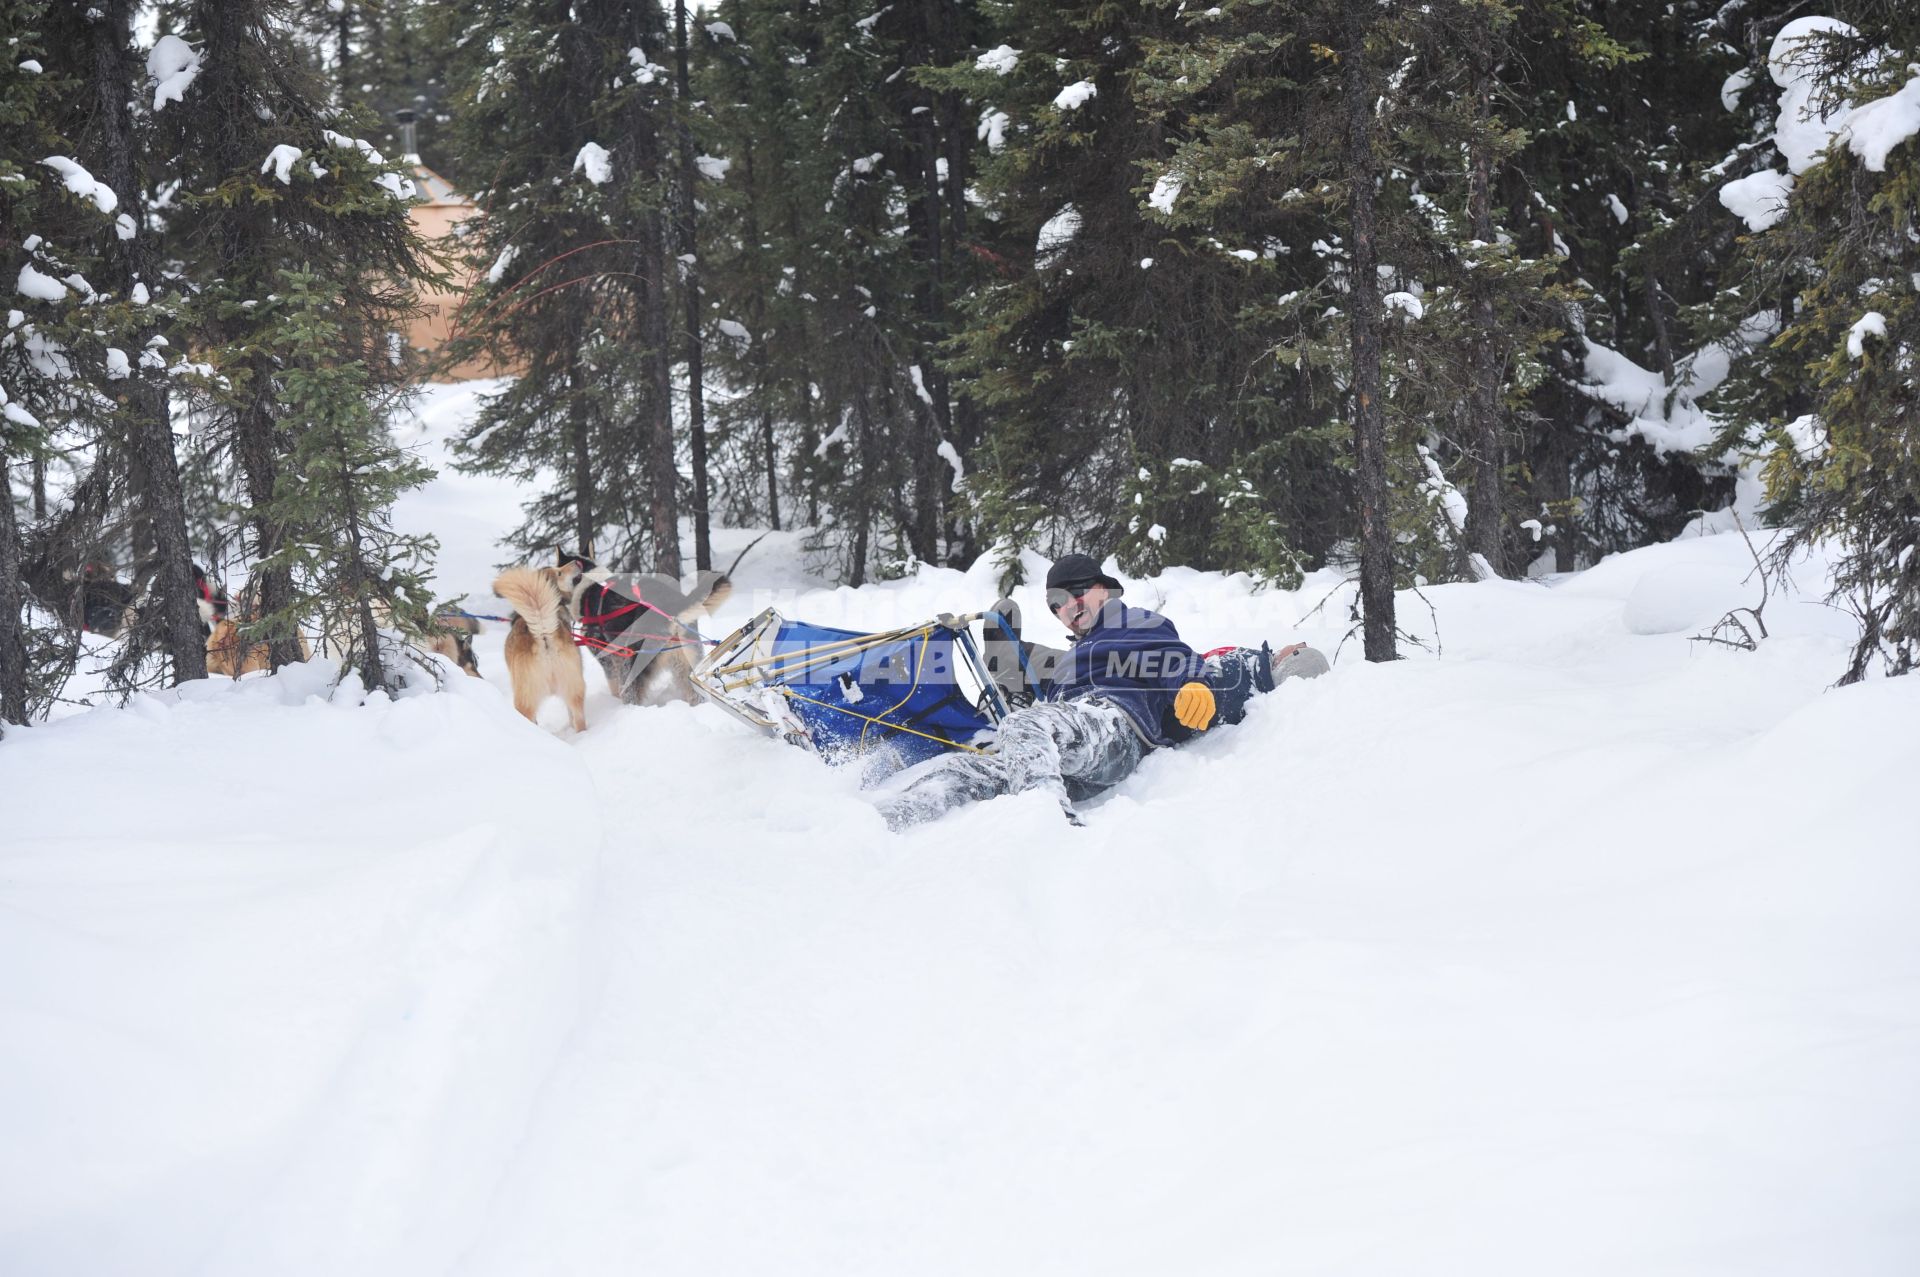 Аляска. Ежегодные гонки на собачьих упряжках (Iditarod Trail Sled Dog Race). На снимке: падение каюра с нарт.